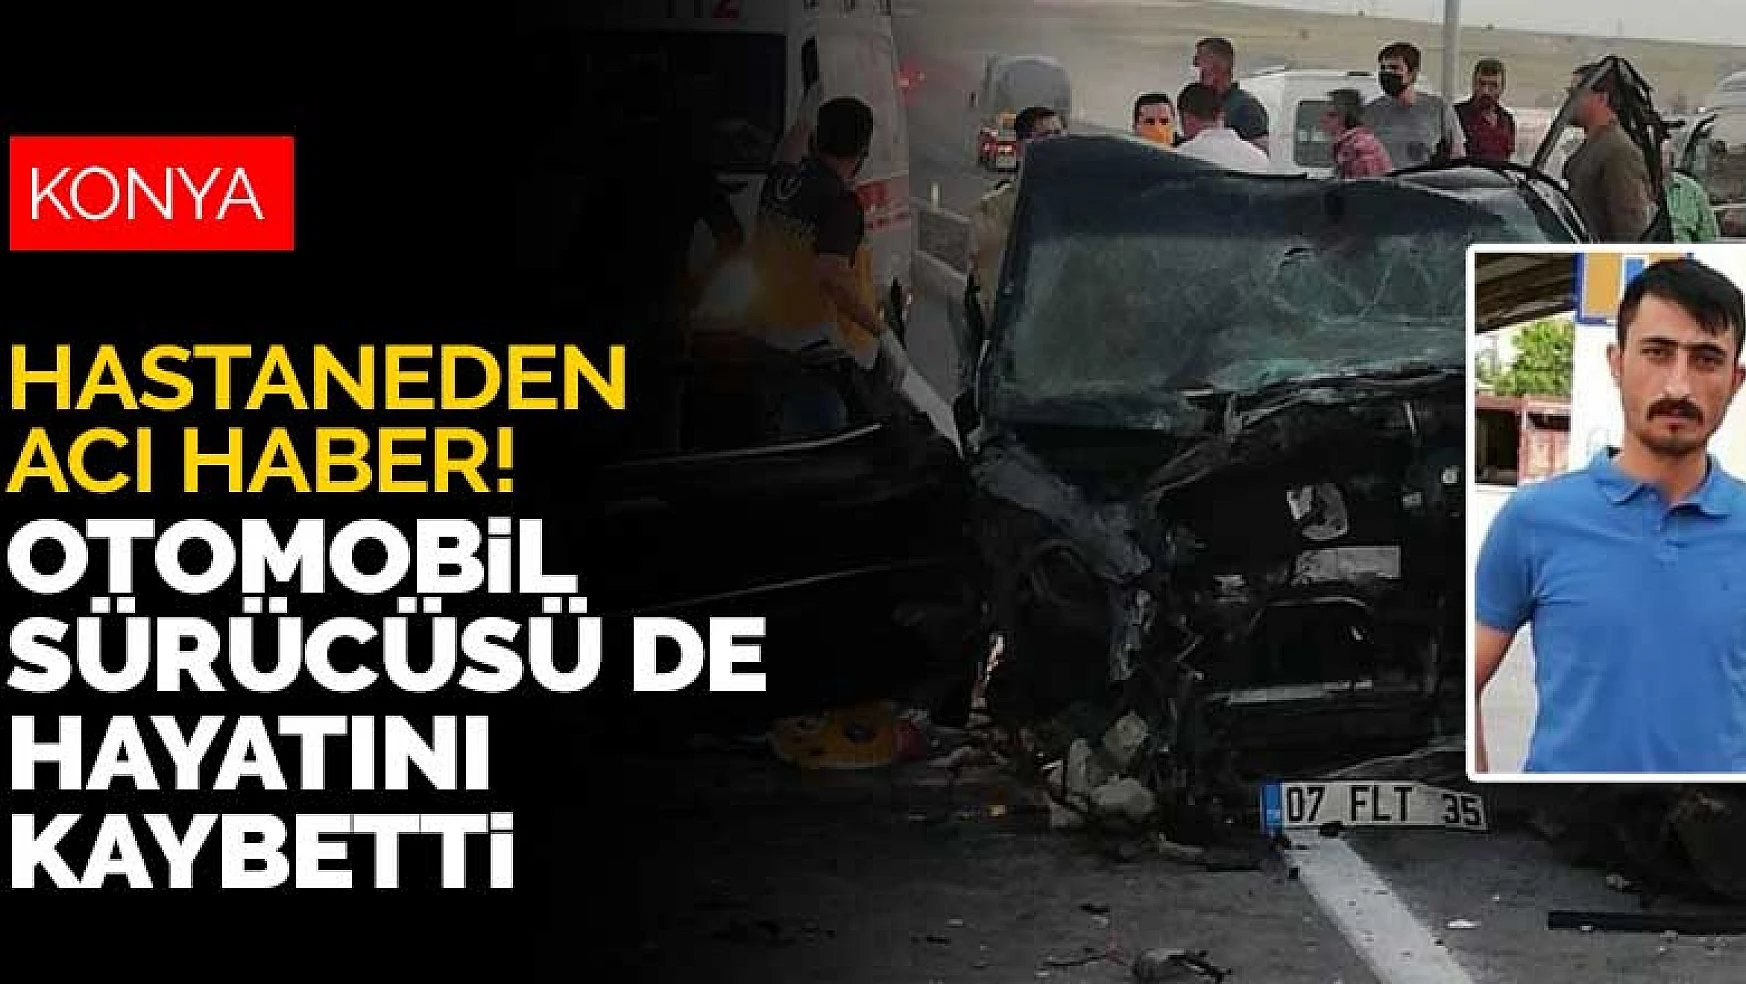 Konya Ilgın'daki kazada ölü sayısı 3'e yükseldi! Otomobil sürücüsü Kadir Şahbaz kurtarılamadı